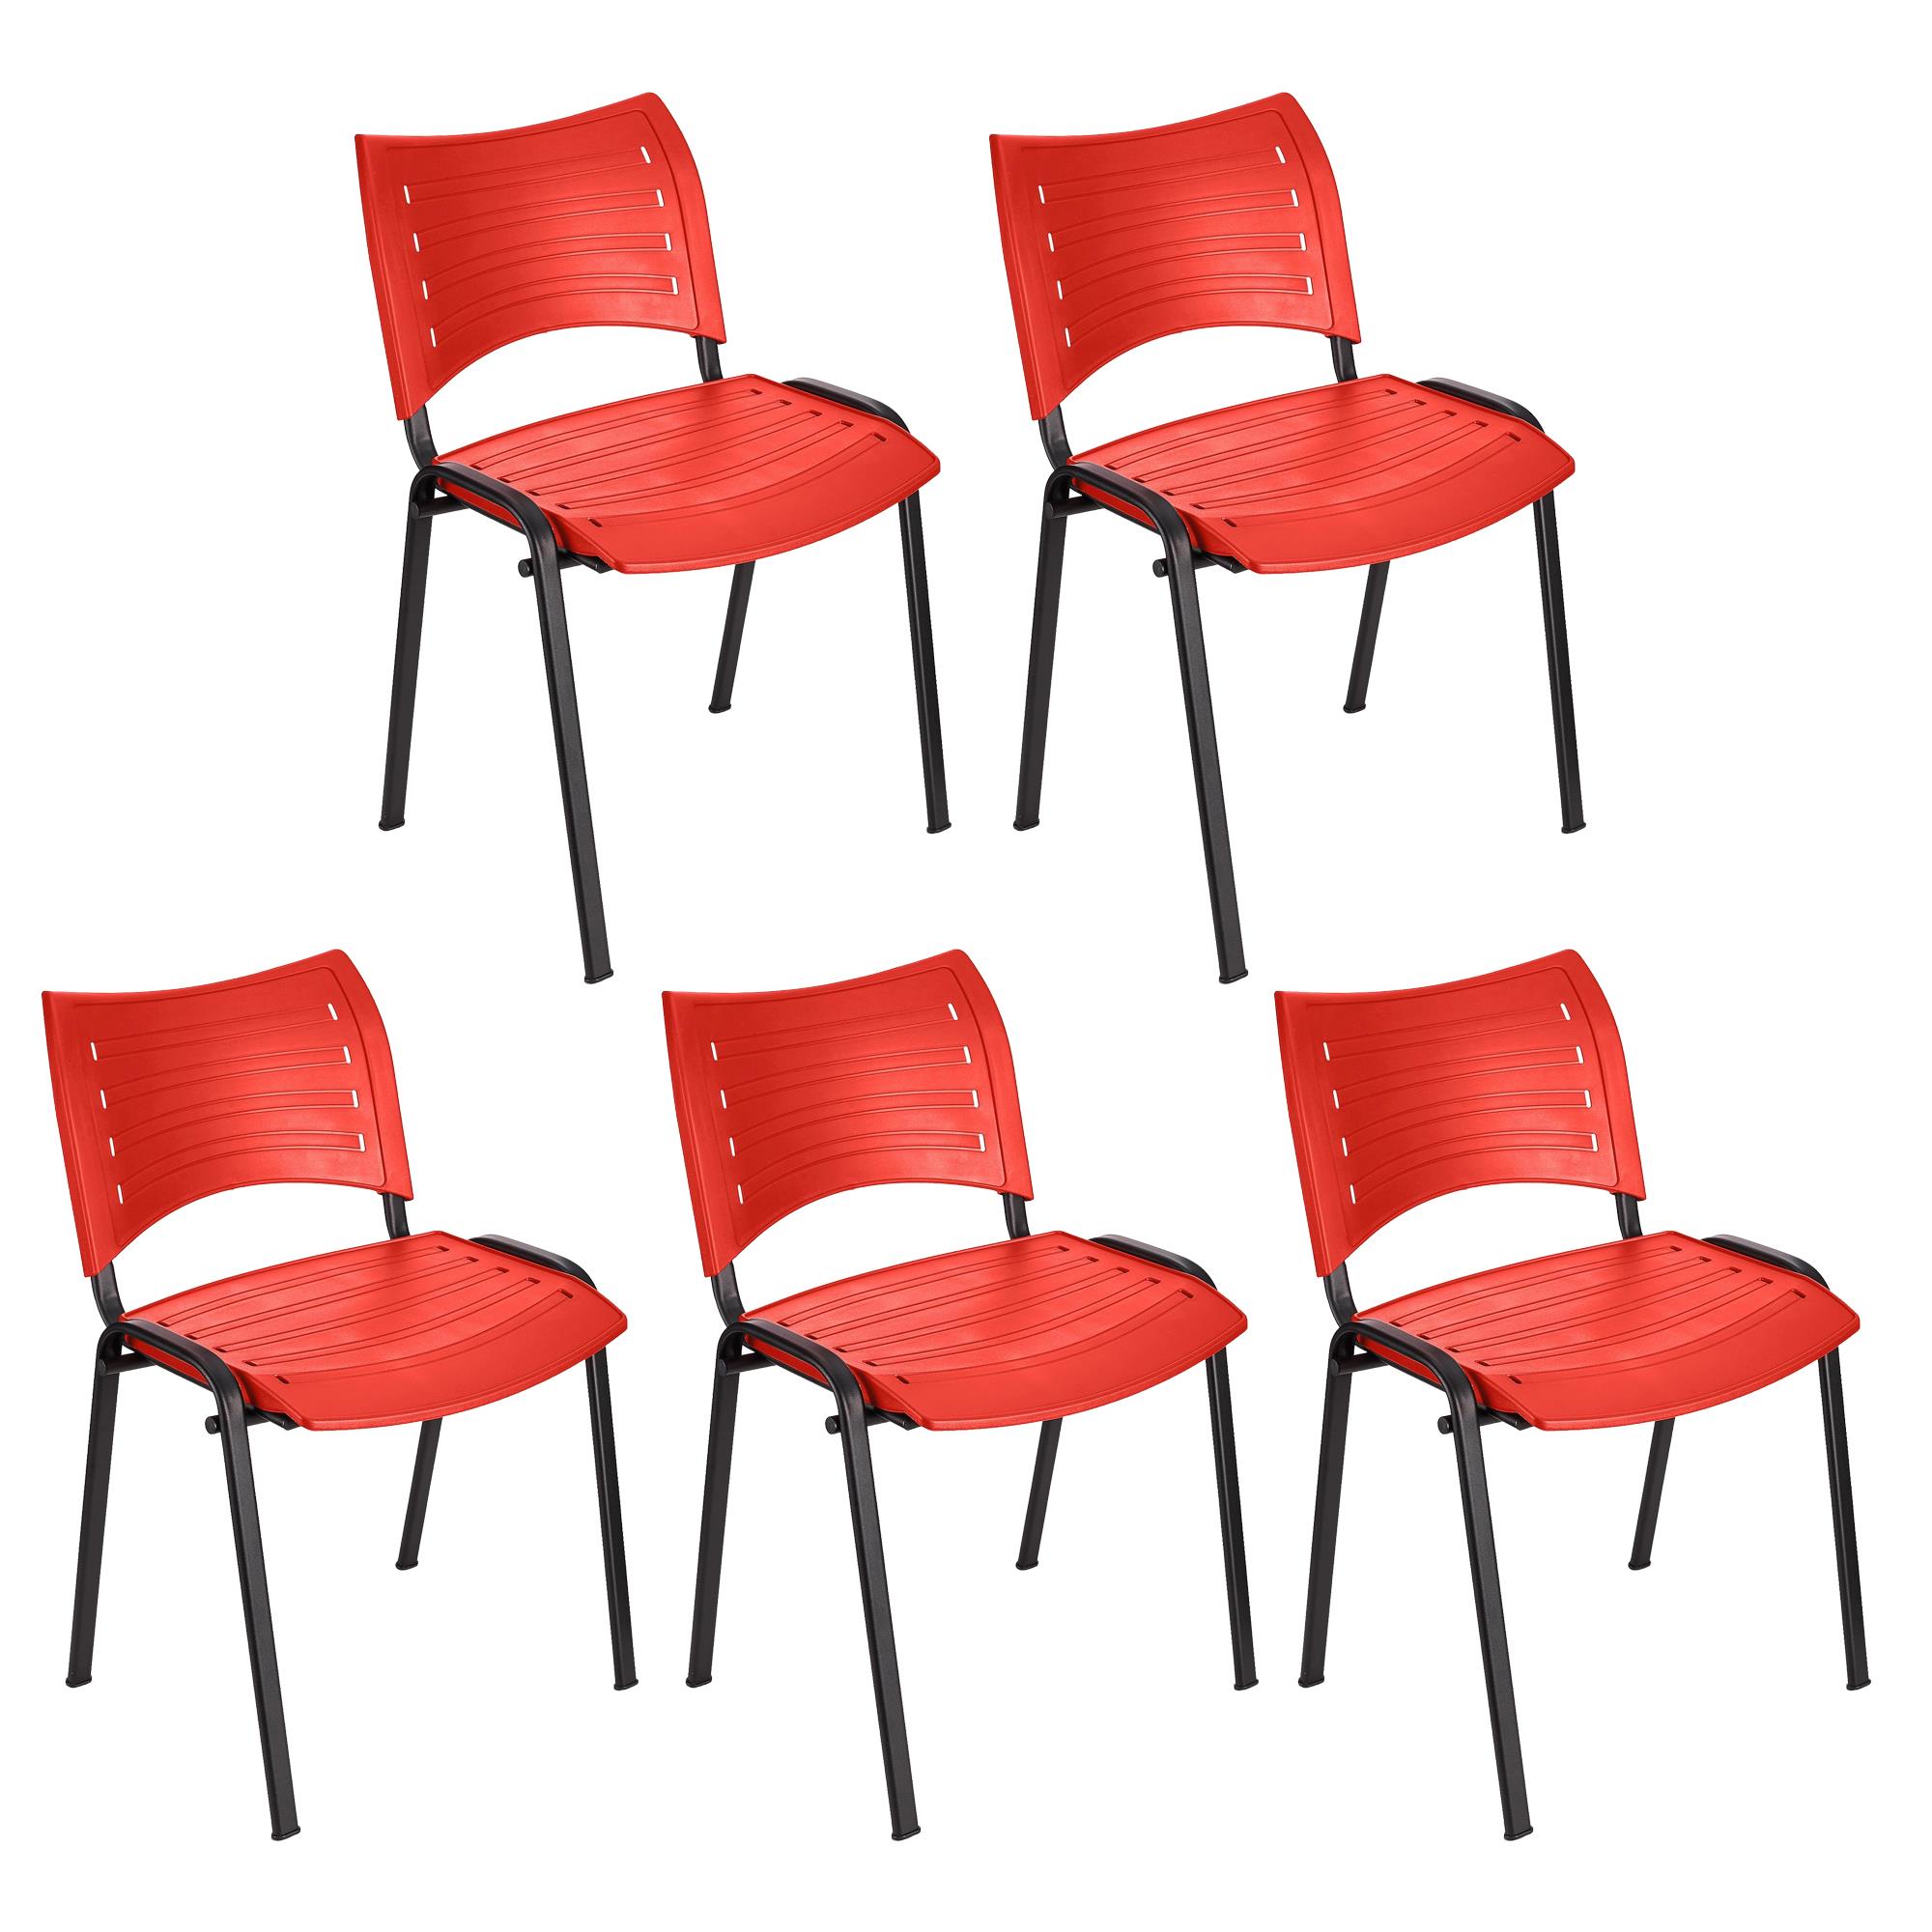 Lote 5 Cadeiras de Visita ELVA, Confortável e Prática, Pernas Pretas, Cor Vermelho